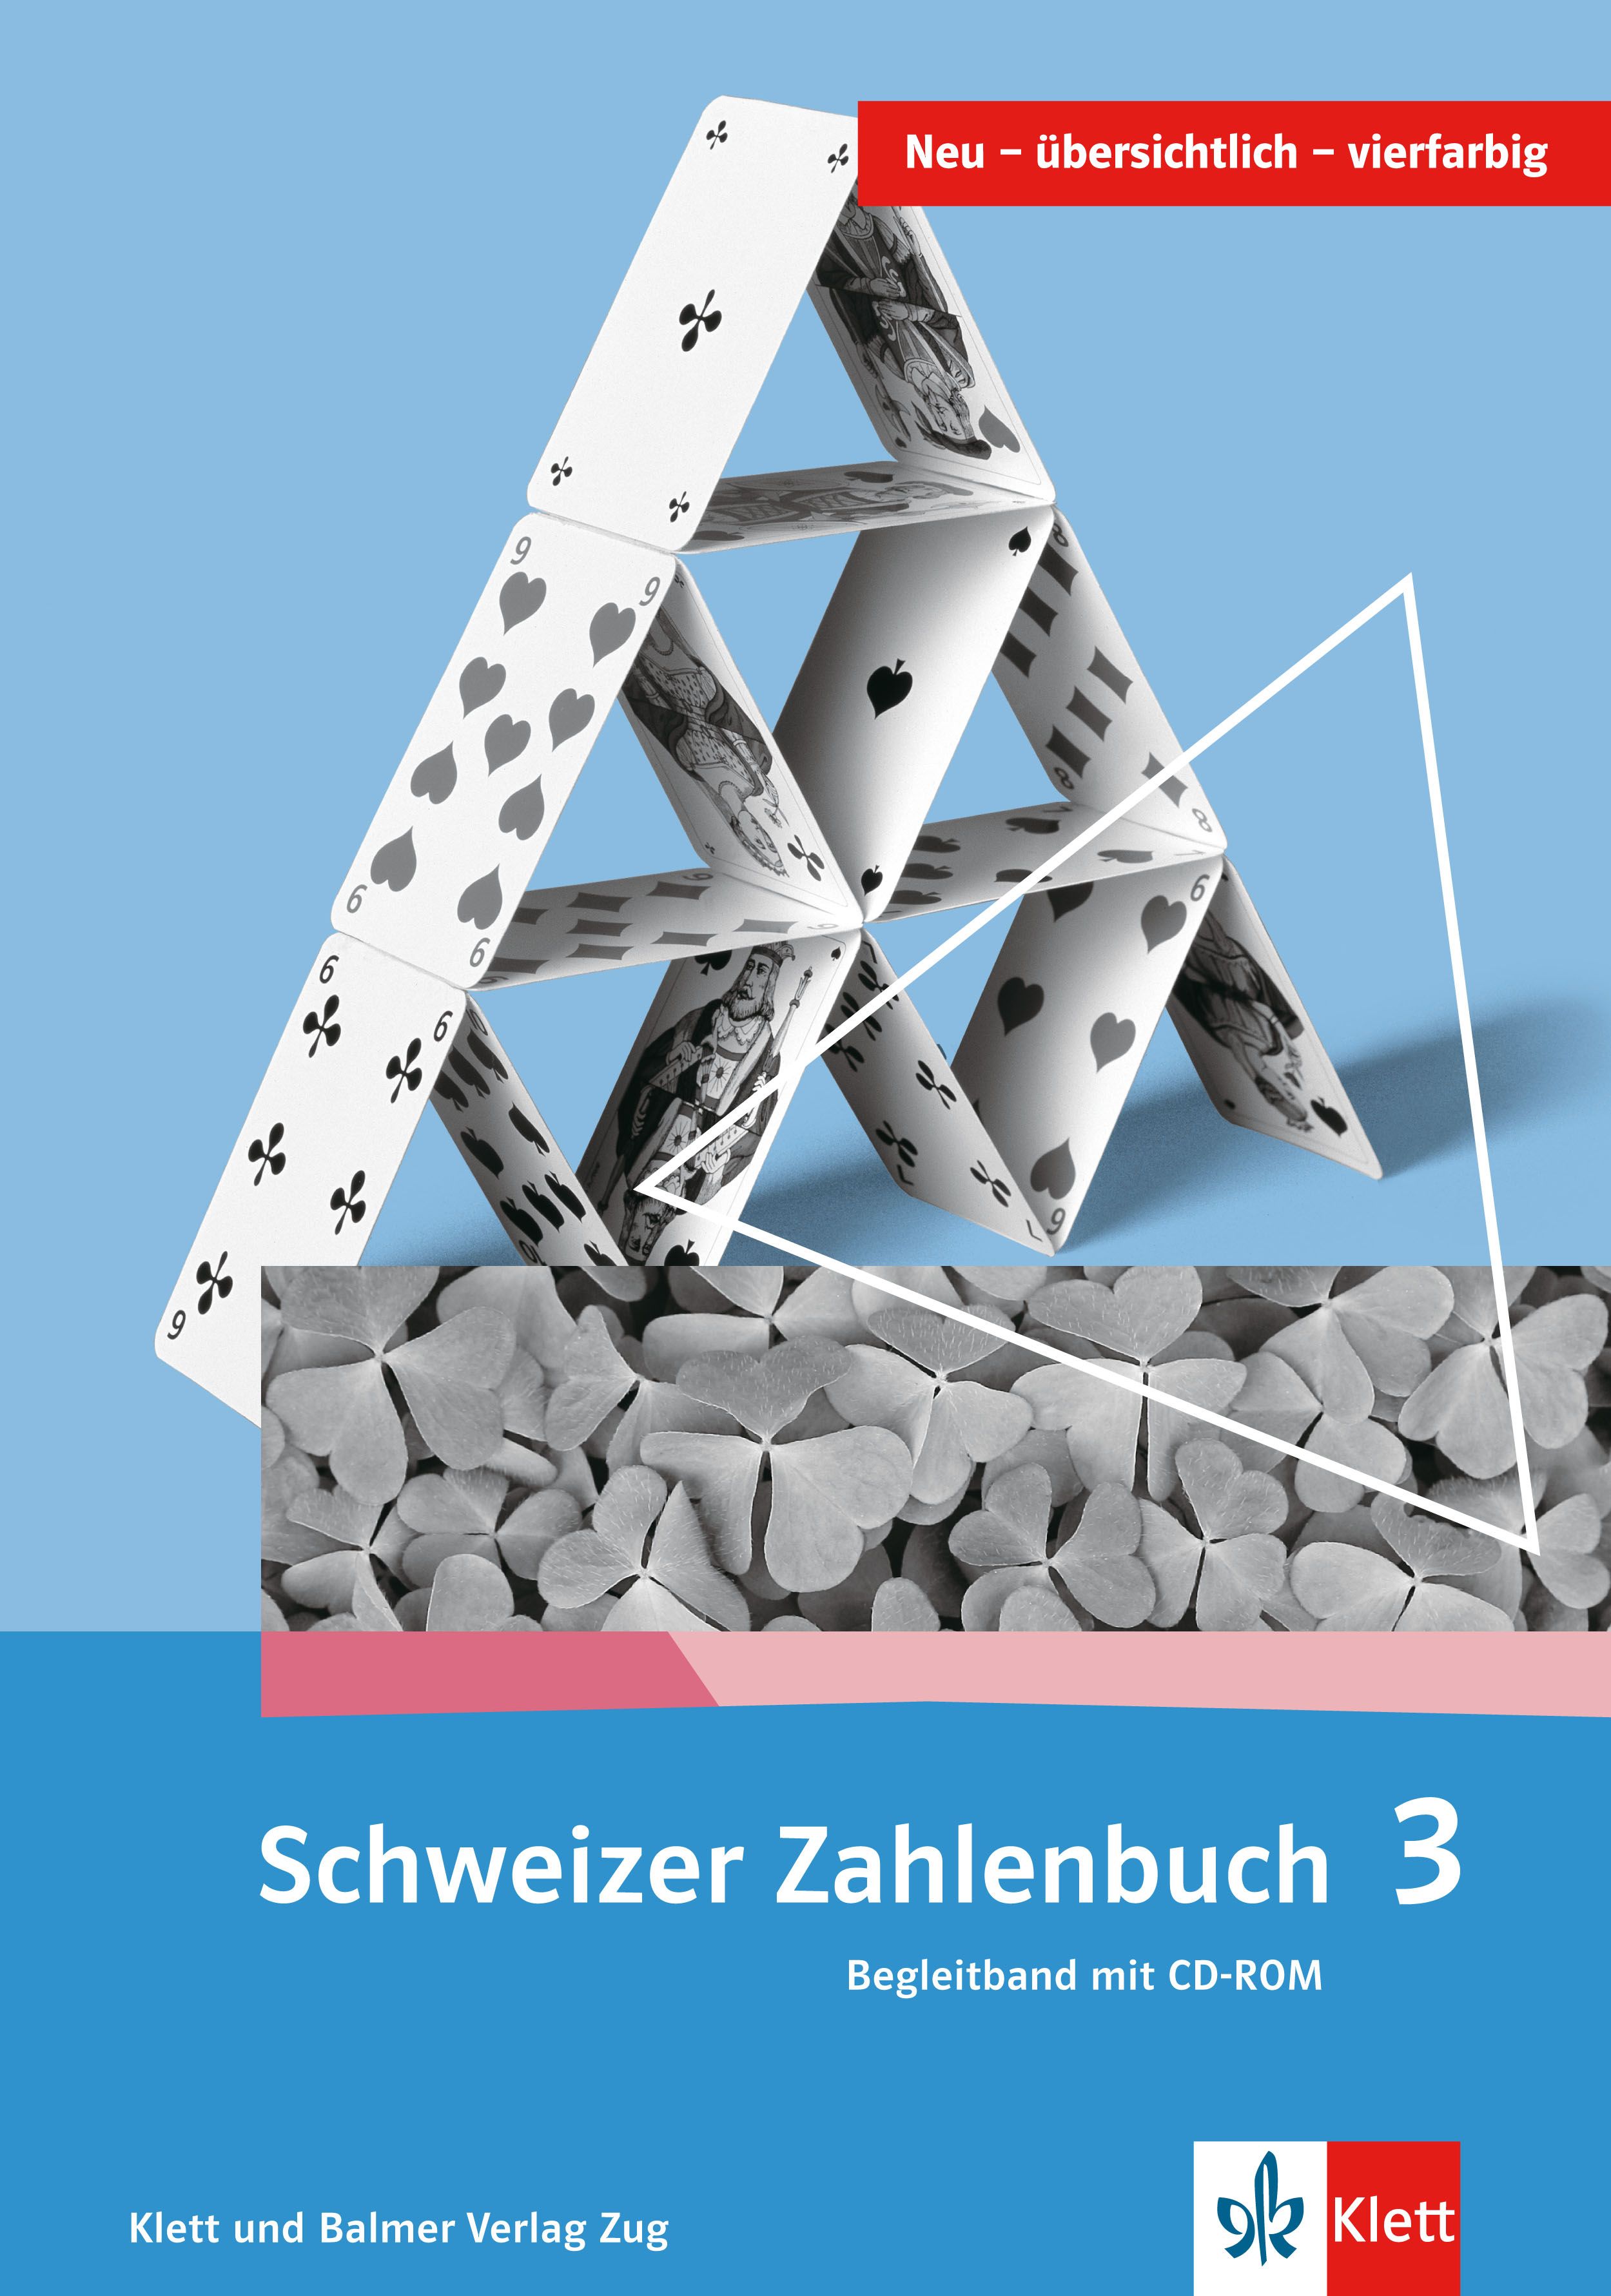 Schweizer Zahlenbuch 3 Begleitband inkl. CDR, ALTE VERS. / SPEZ.-BEST.